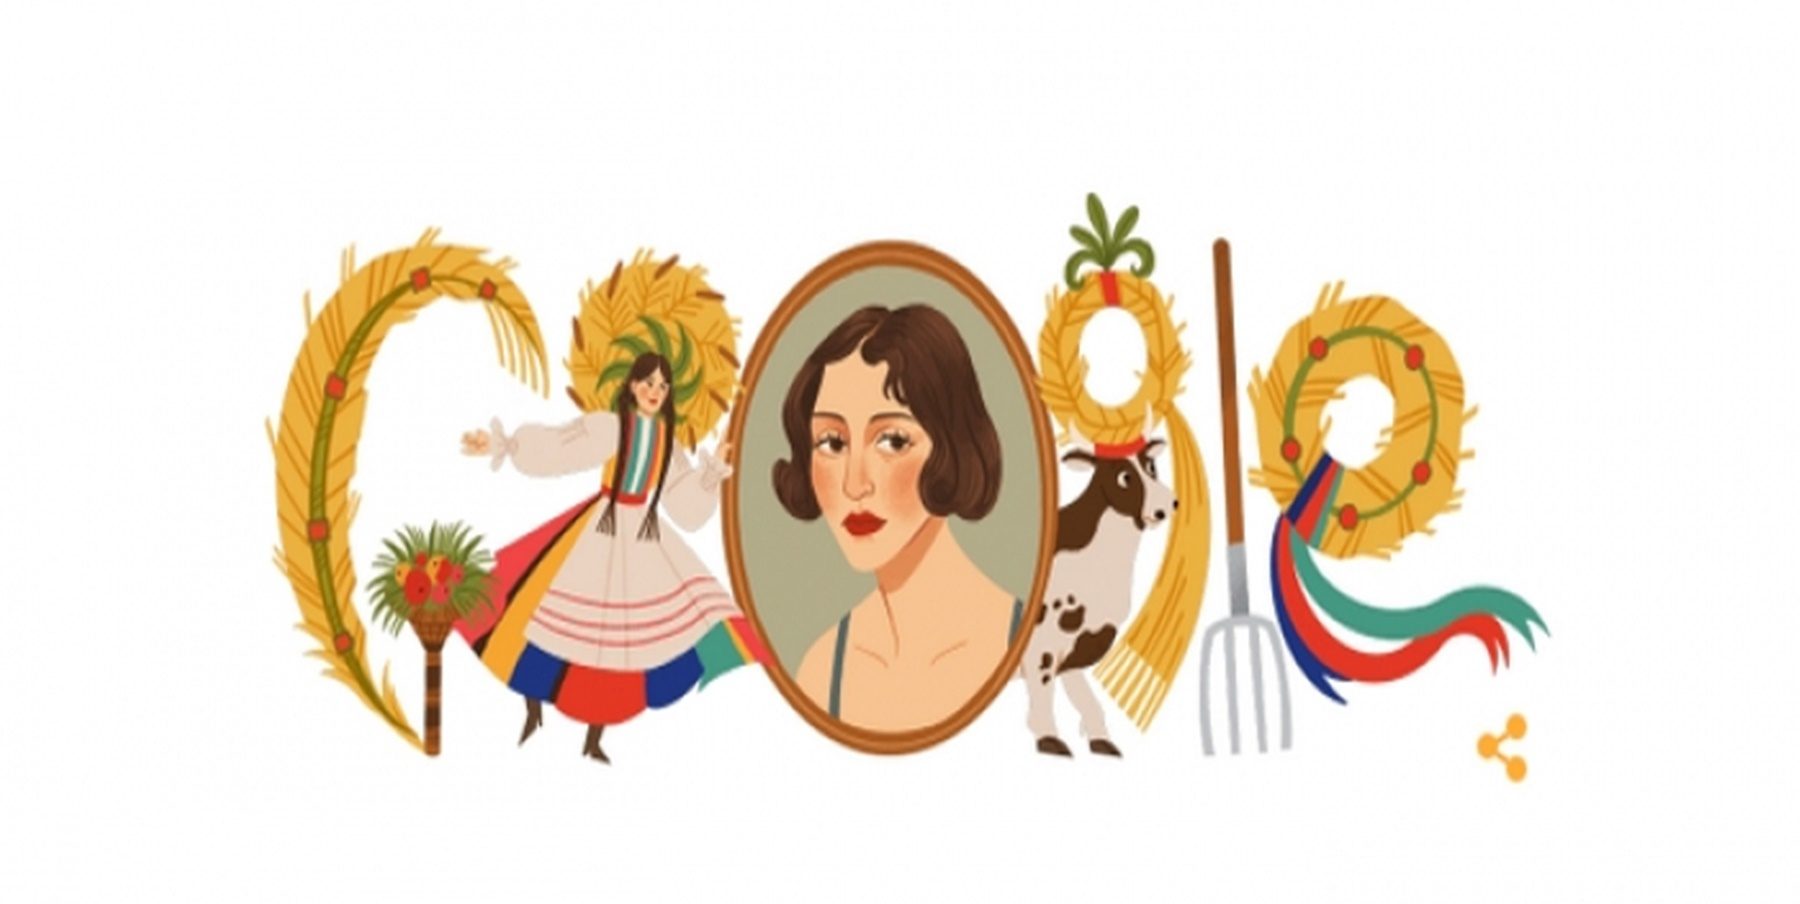 Ζόφια Στριγένσκα : H google αφιερώνει ένα doodle στην ζωγράφο του μεσοπολέμου